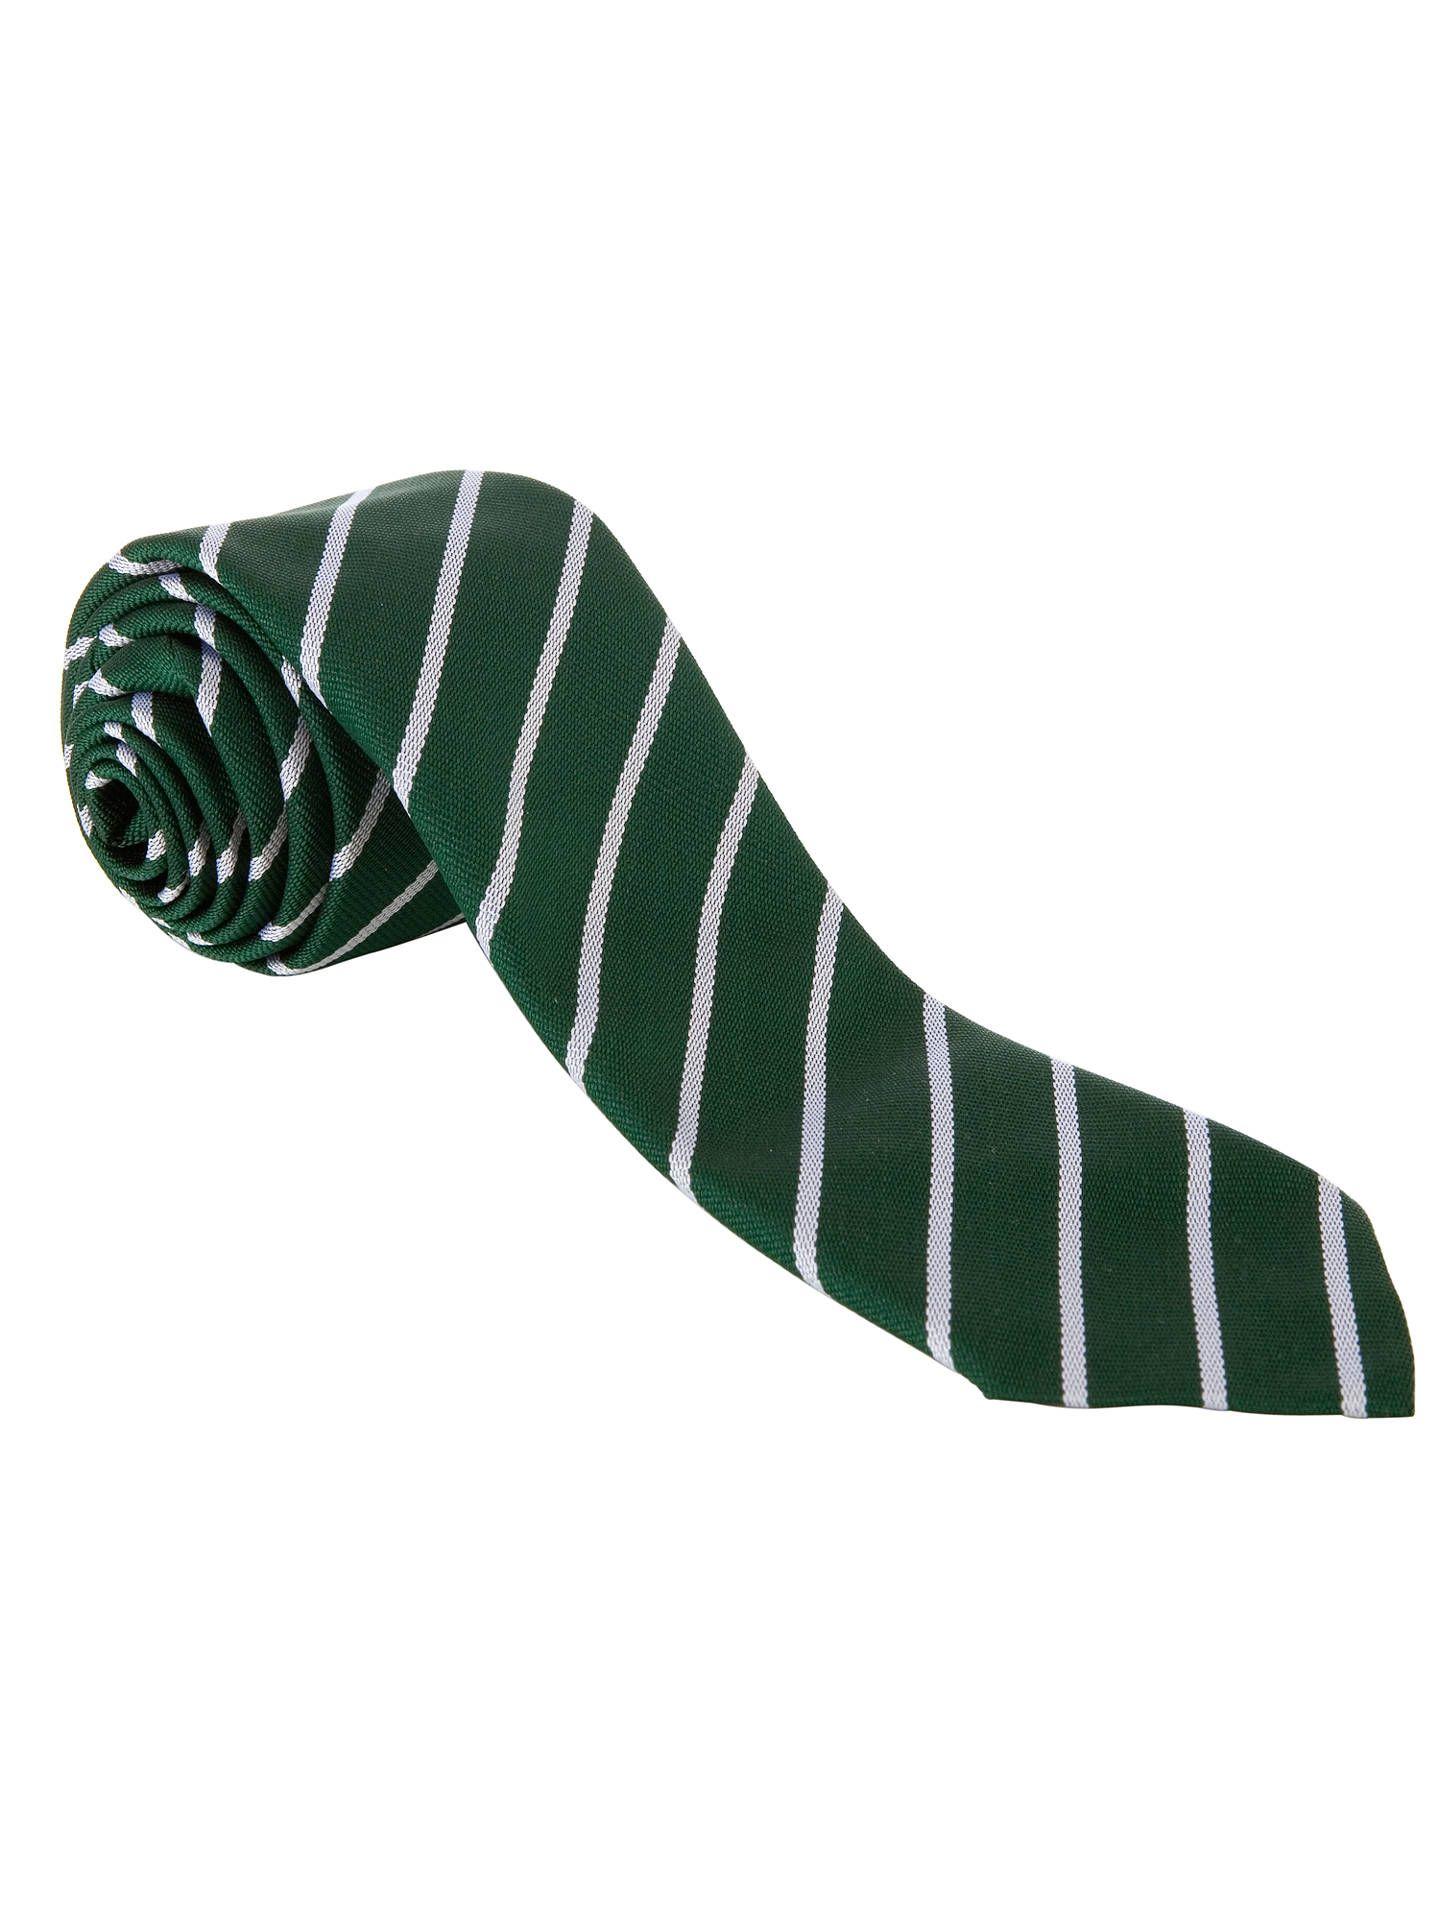 Green White Stripe with Logo - John Lewis & Partners Unisex Stripe Tie, Green White At John Lewis